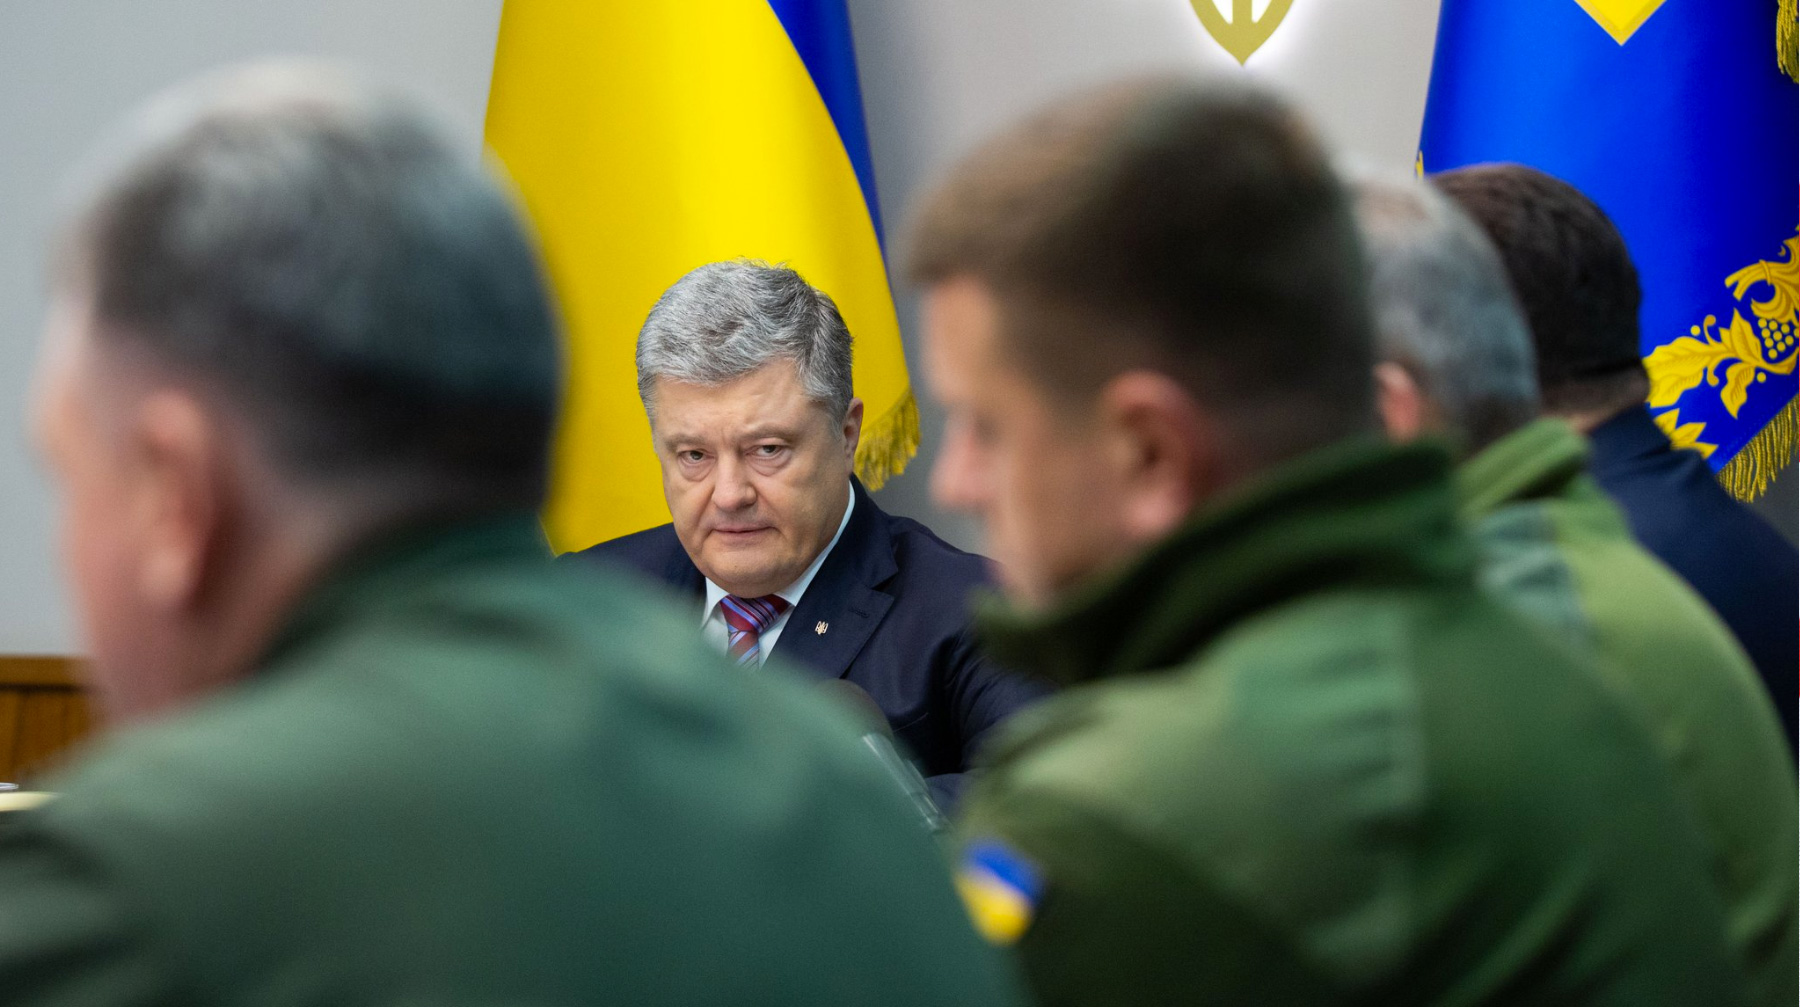 Мера должна помешать Москве формировать в стране «отряды частных армий», заявил президент Украины Петр Порошенко undefined